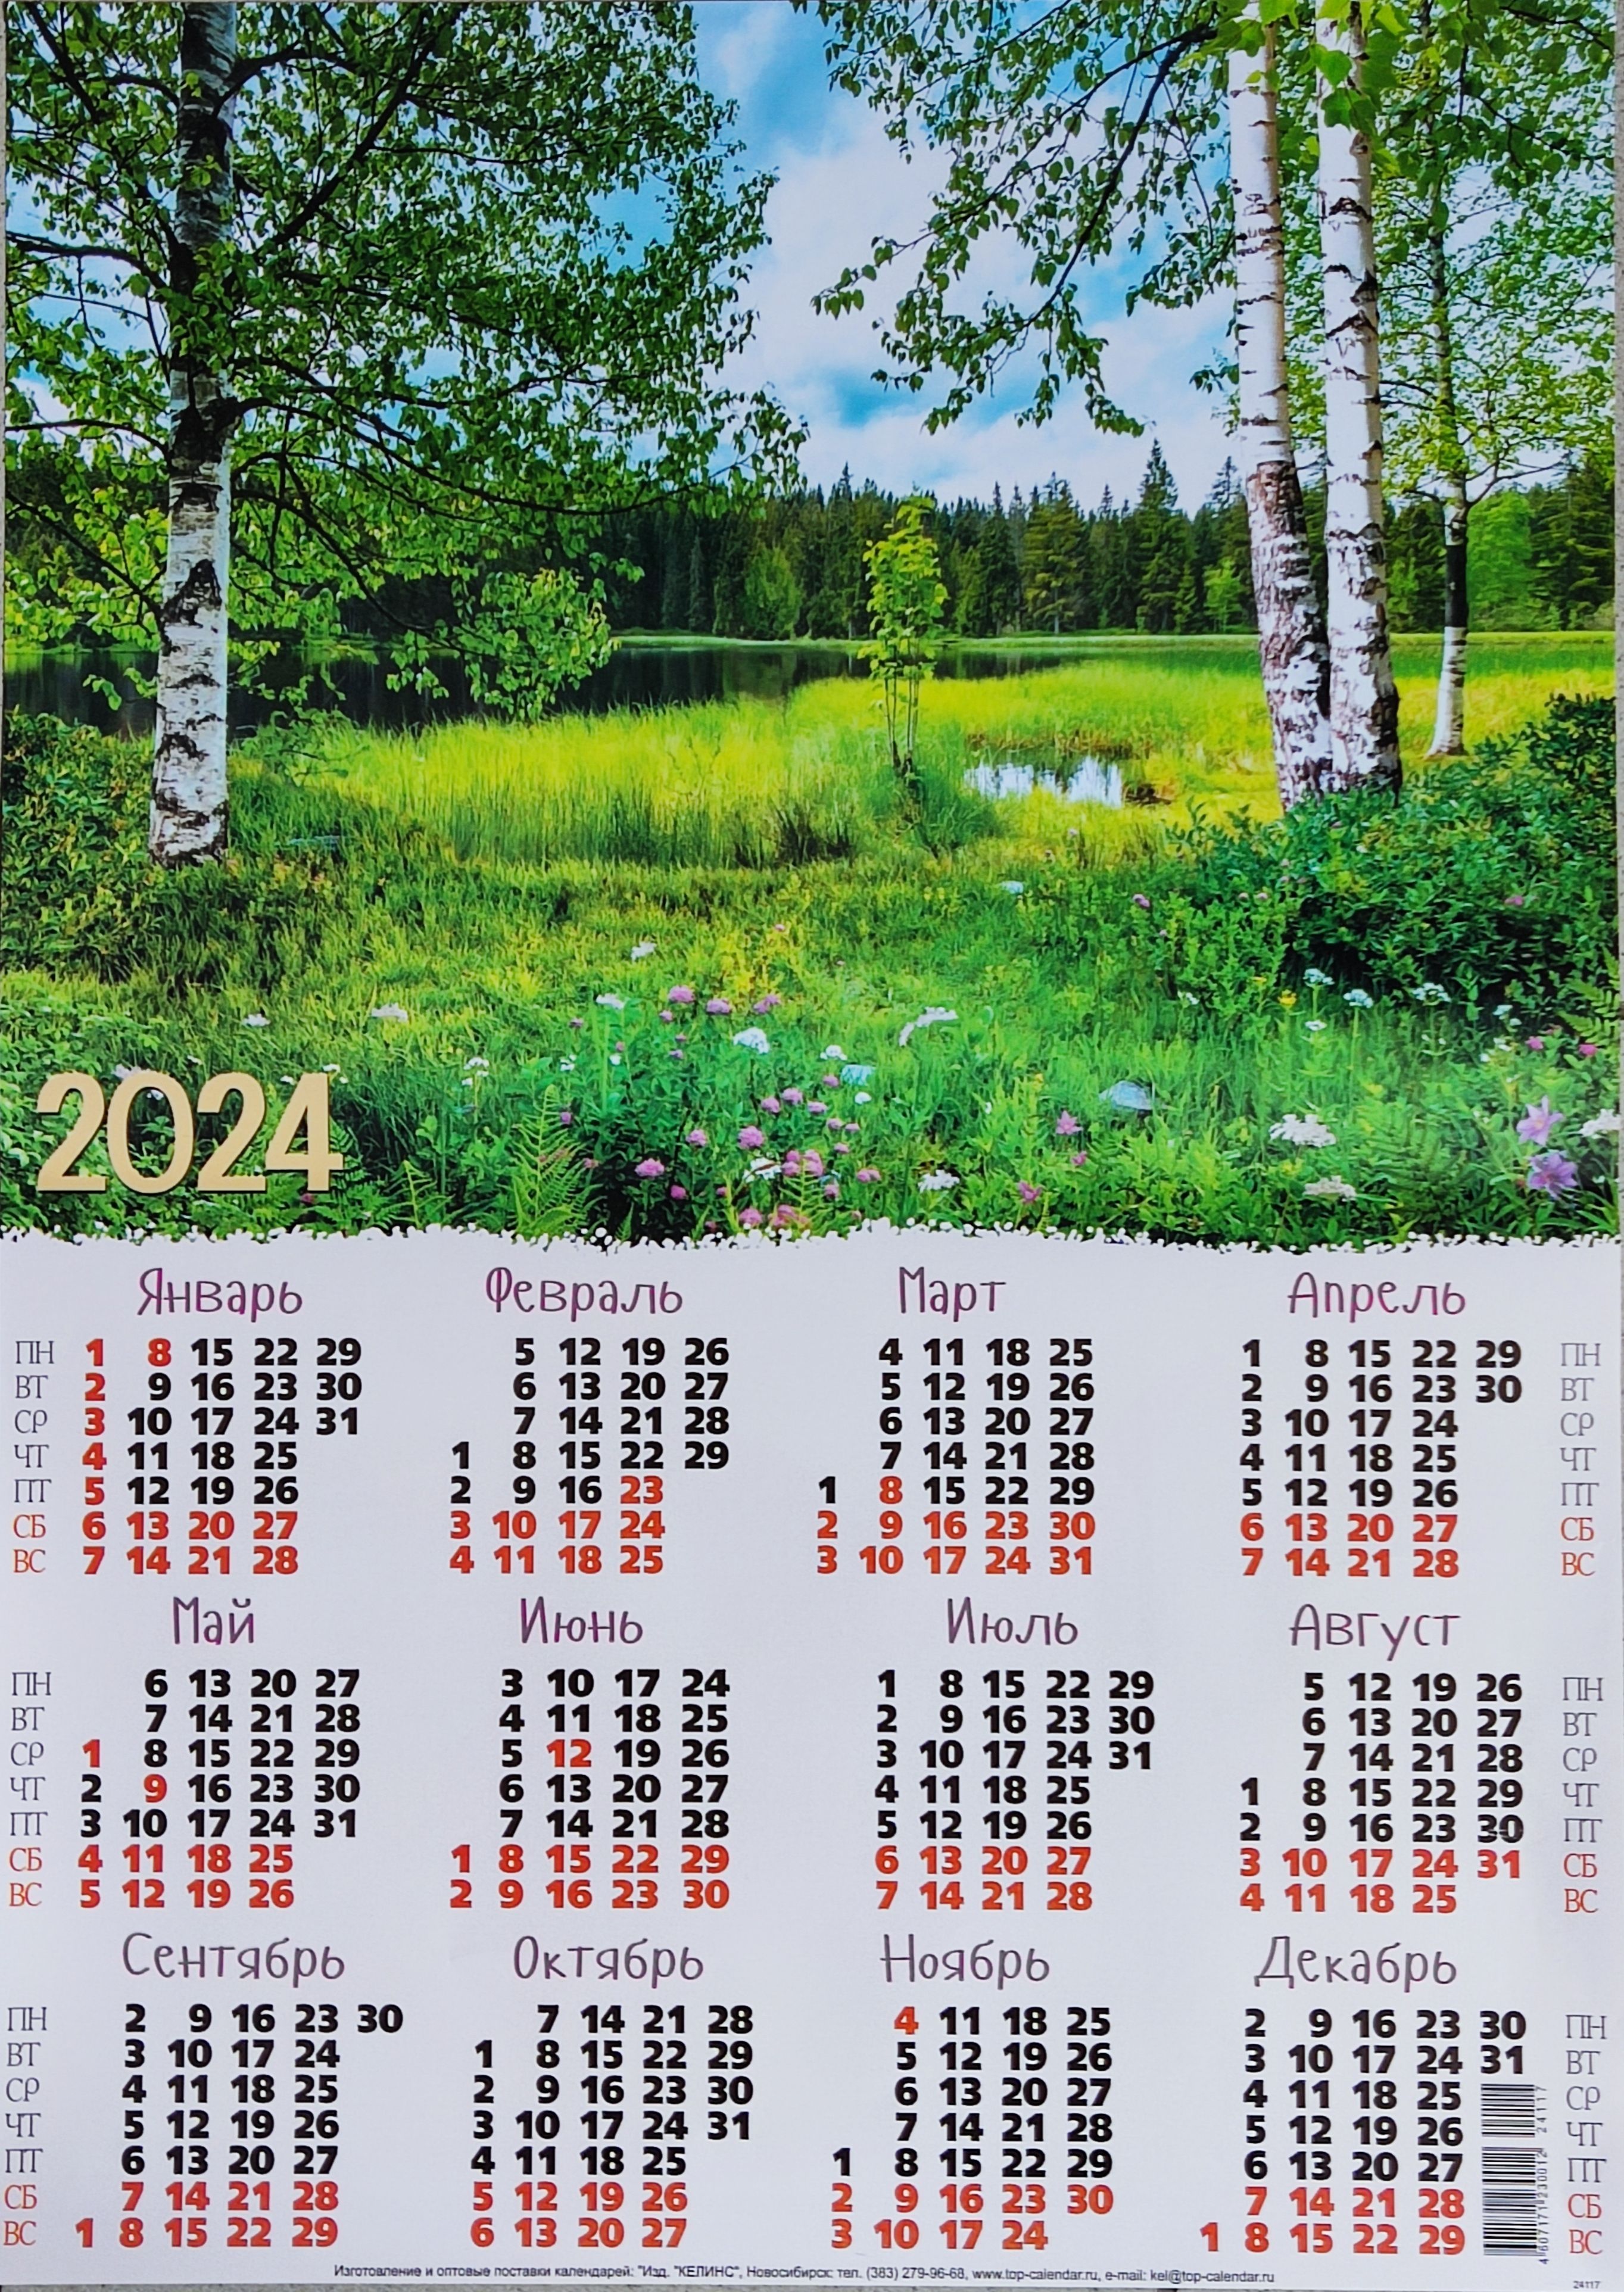 Посади дерево в 2024 году к 90-летию Челябинской области